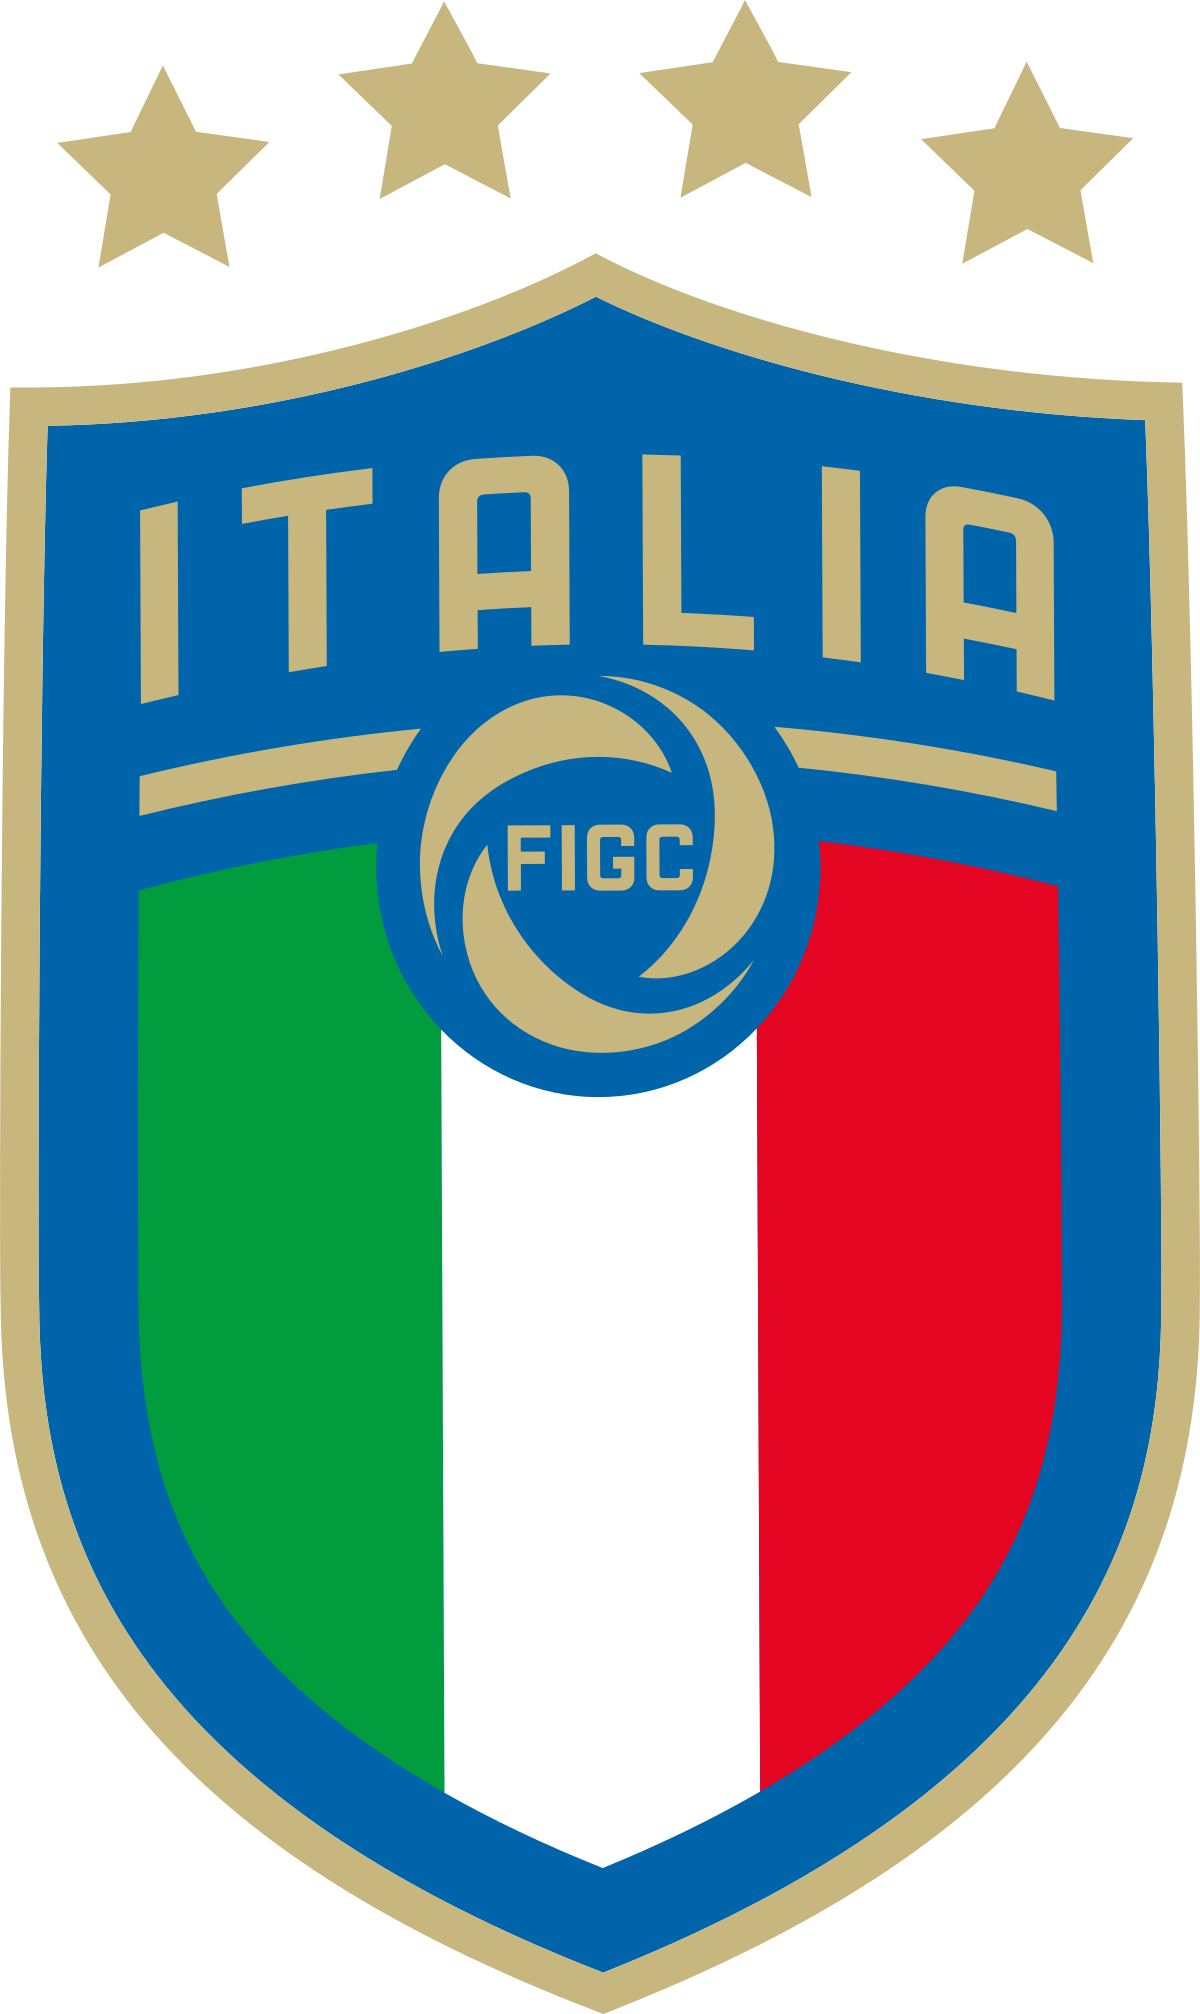 Italy Logo - Italy national football team